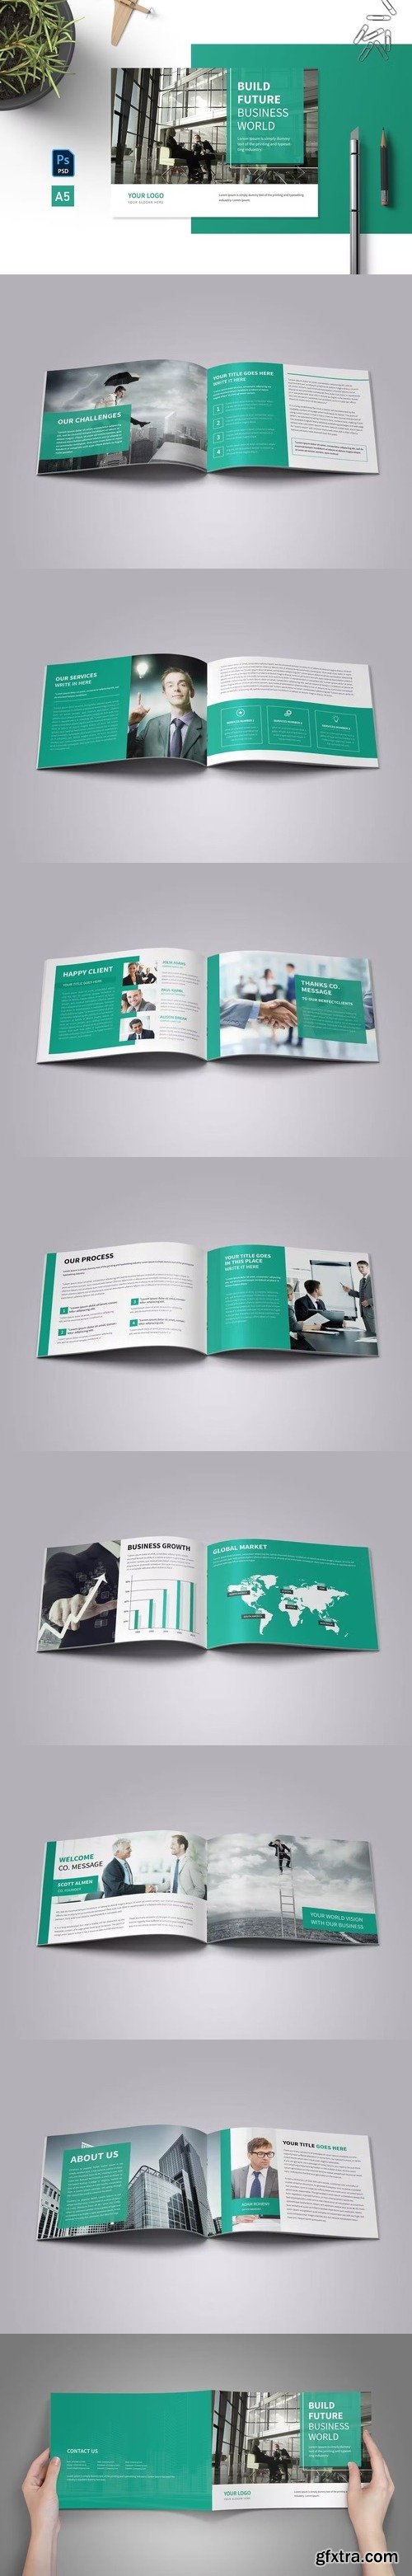 Corporate business brochure